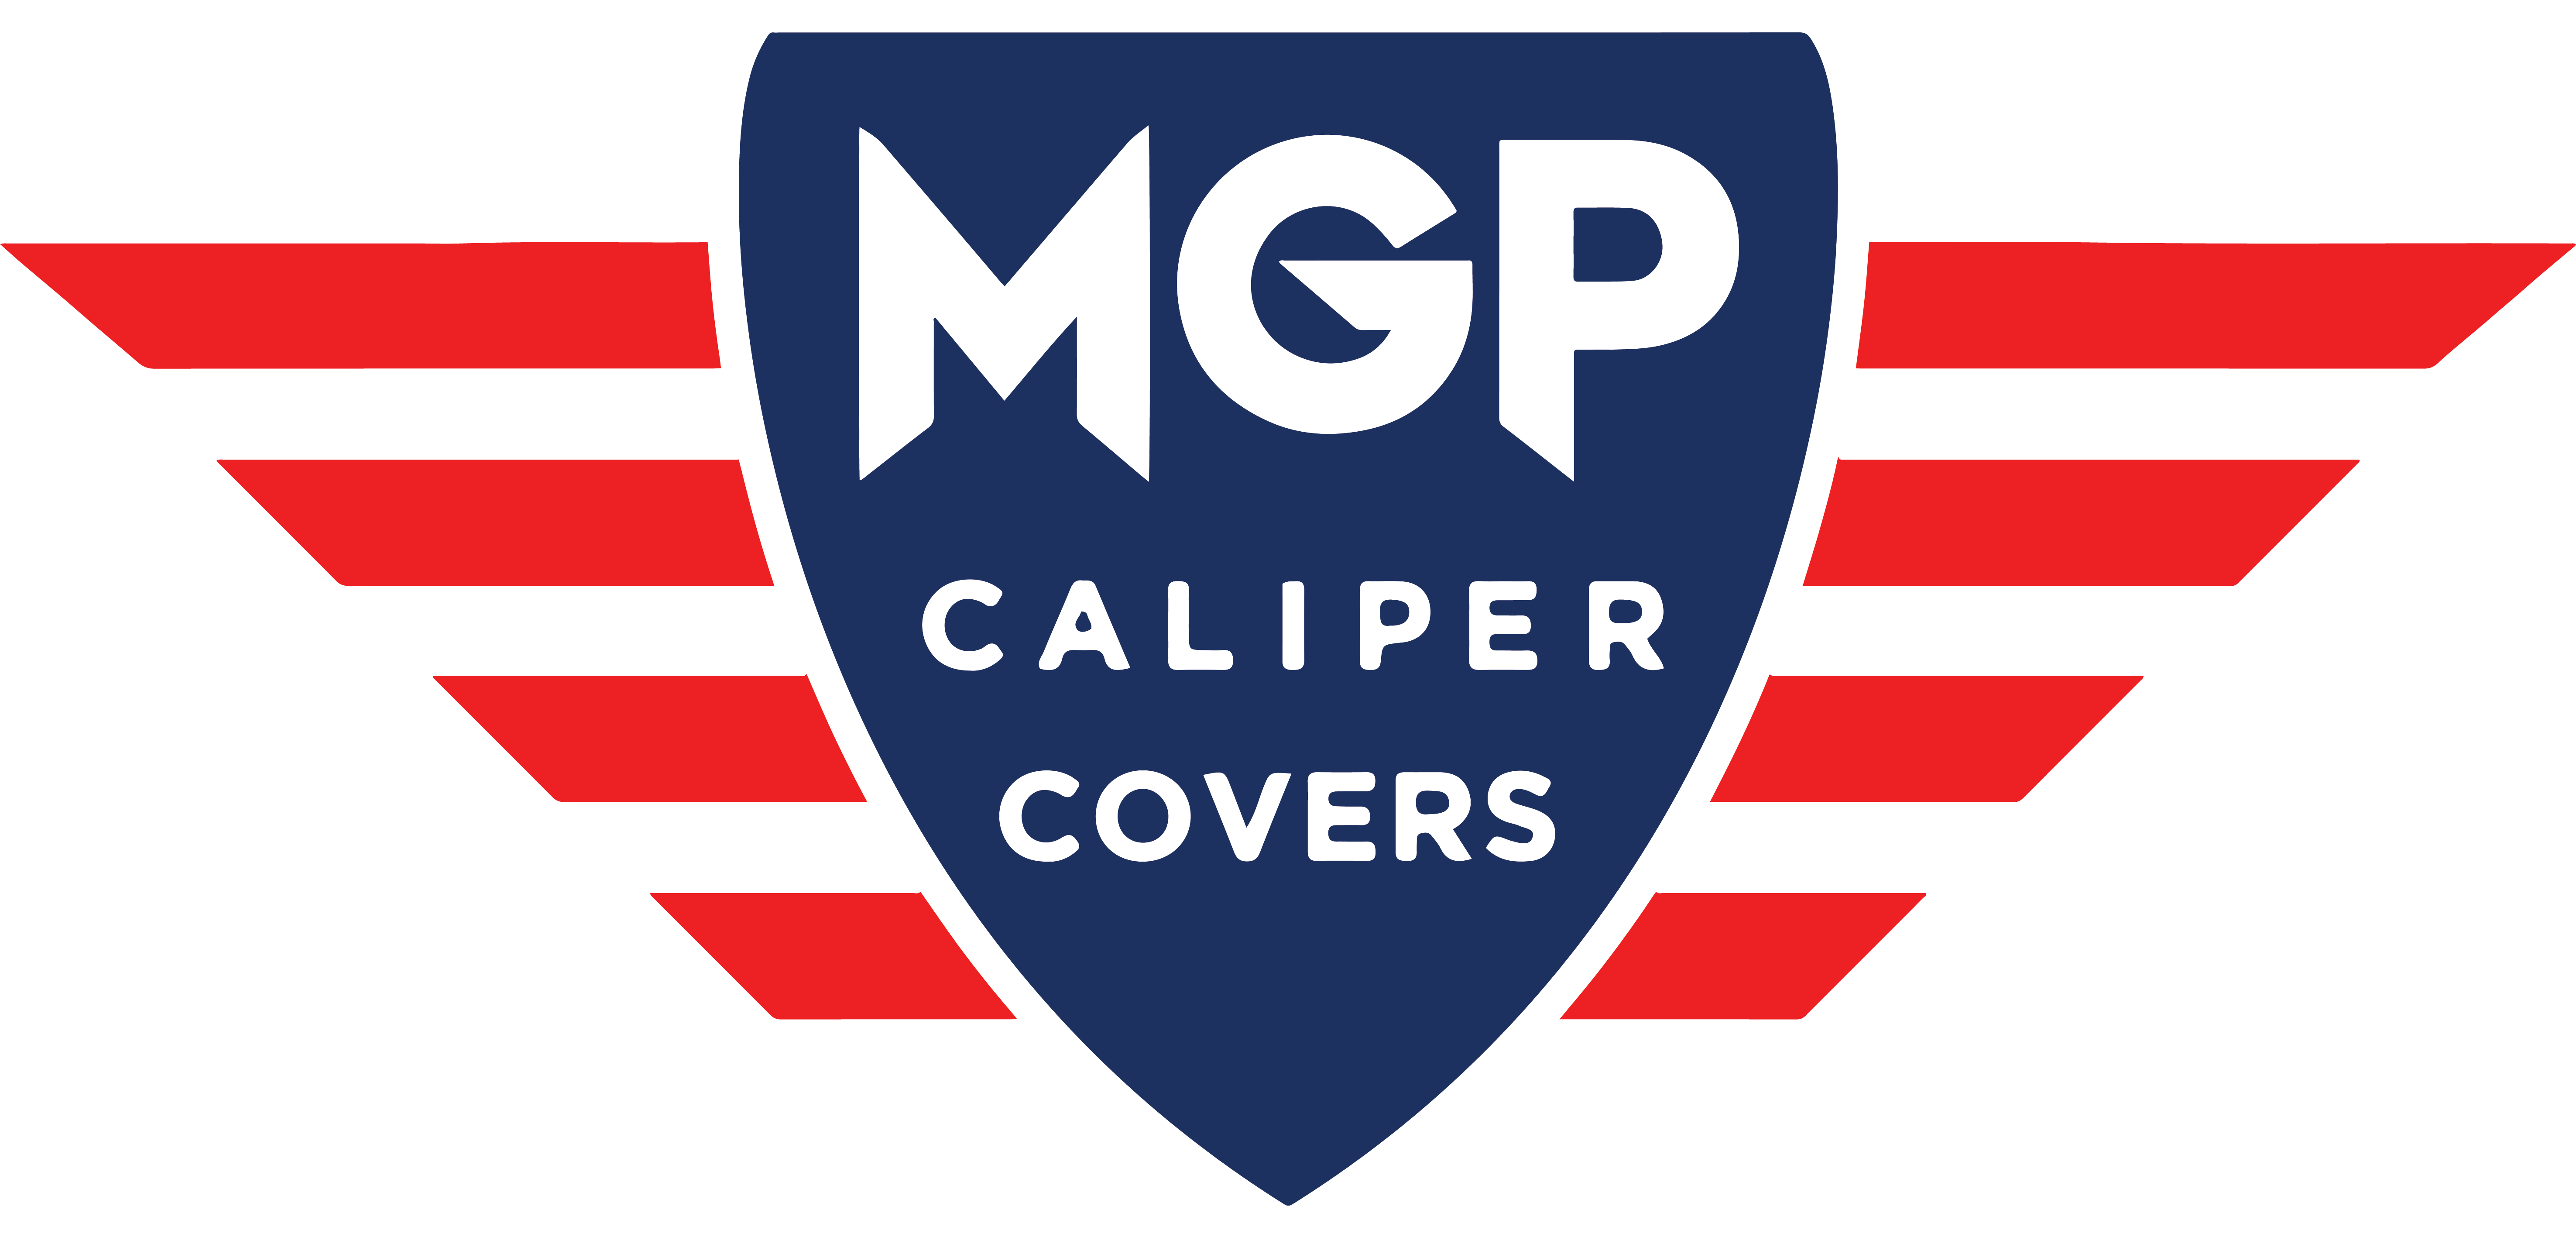 MGP Caliper Covers Mercedes-Benz Caliper Covers 23029Smgprd 4 Pack Red Mgp 